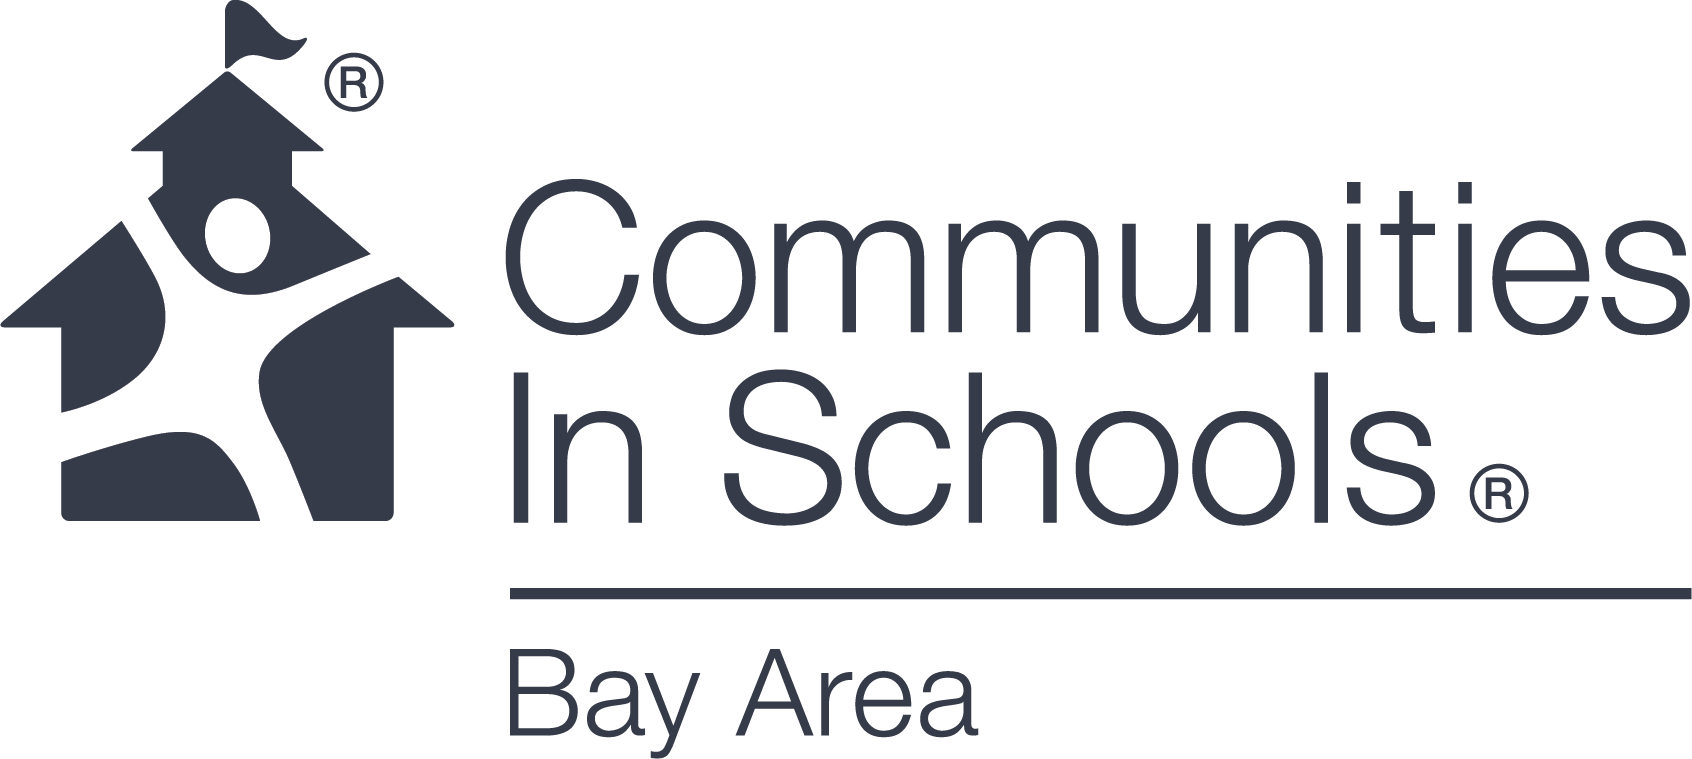 Communities in Schools Bay Area.png